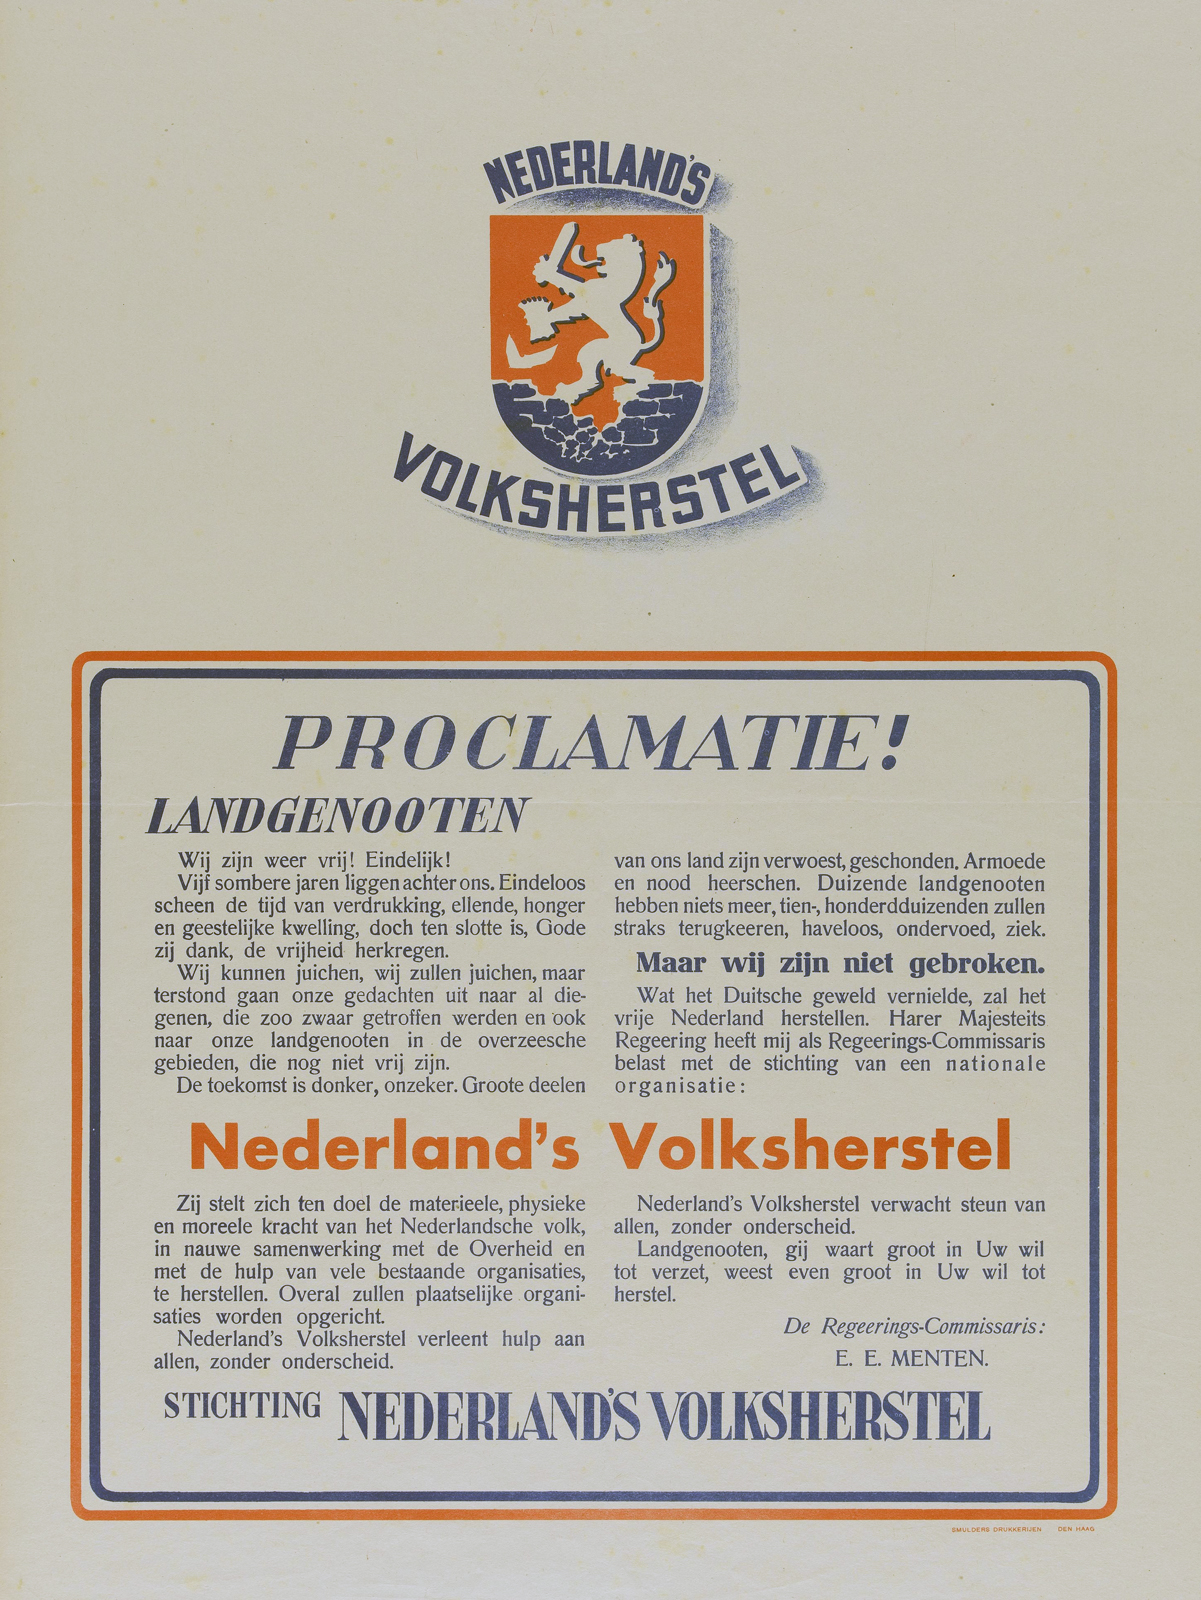 Proclamatie van Nederlands Volksherstel, waarin zij aankondigt binnenkort met hulpverlening te beginnen